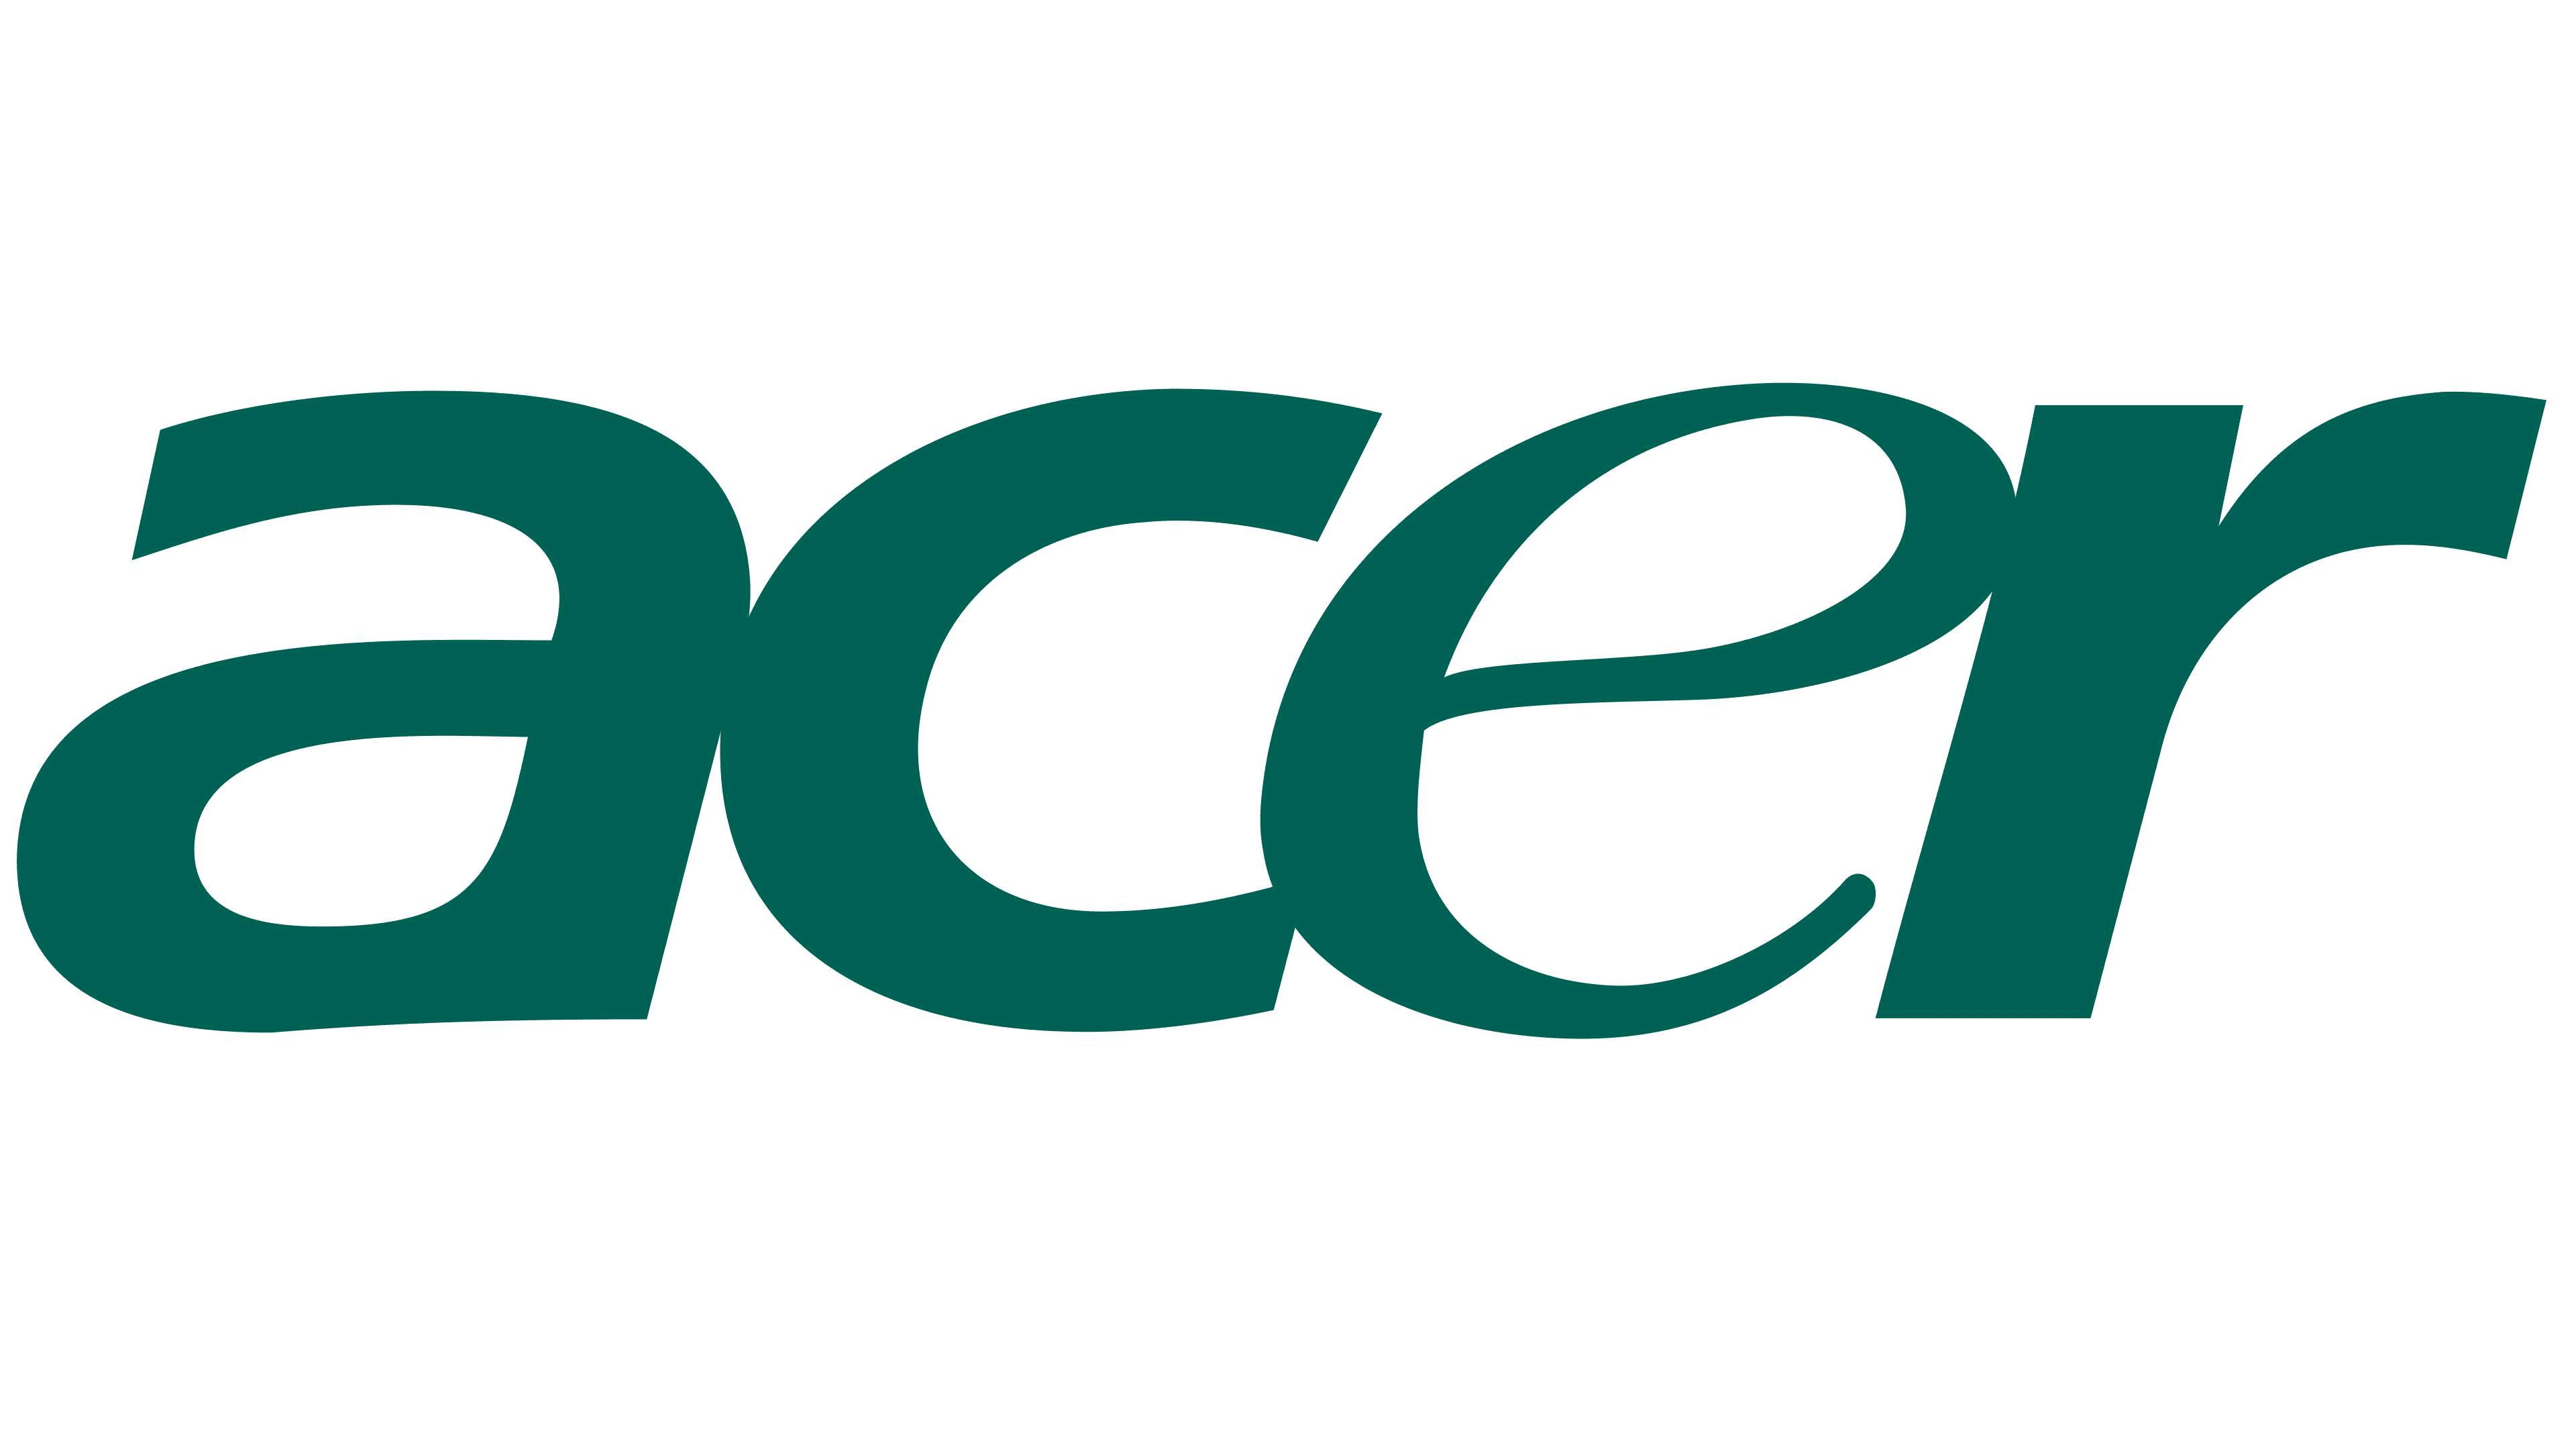 acer logo images